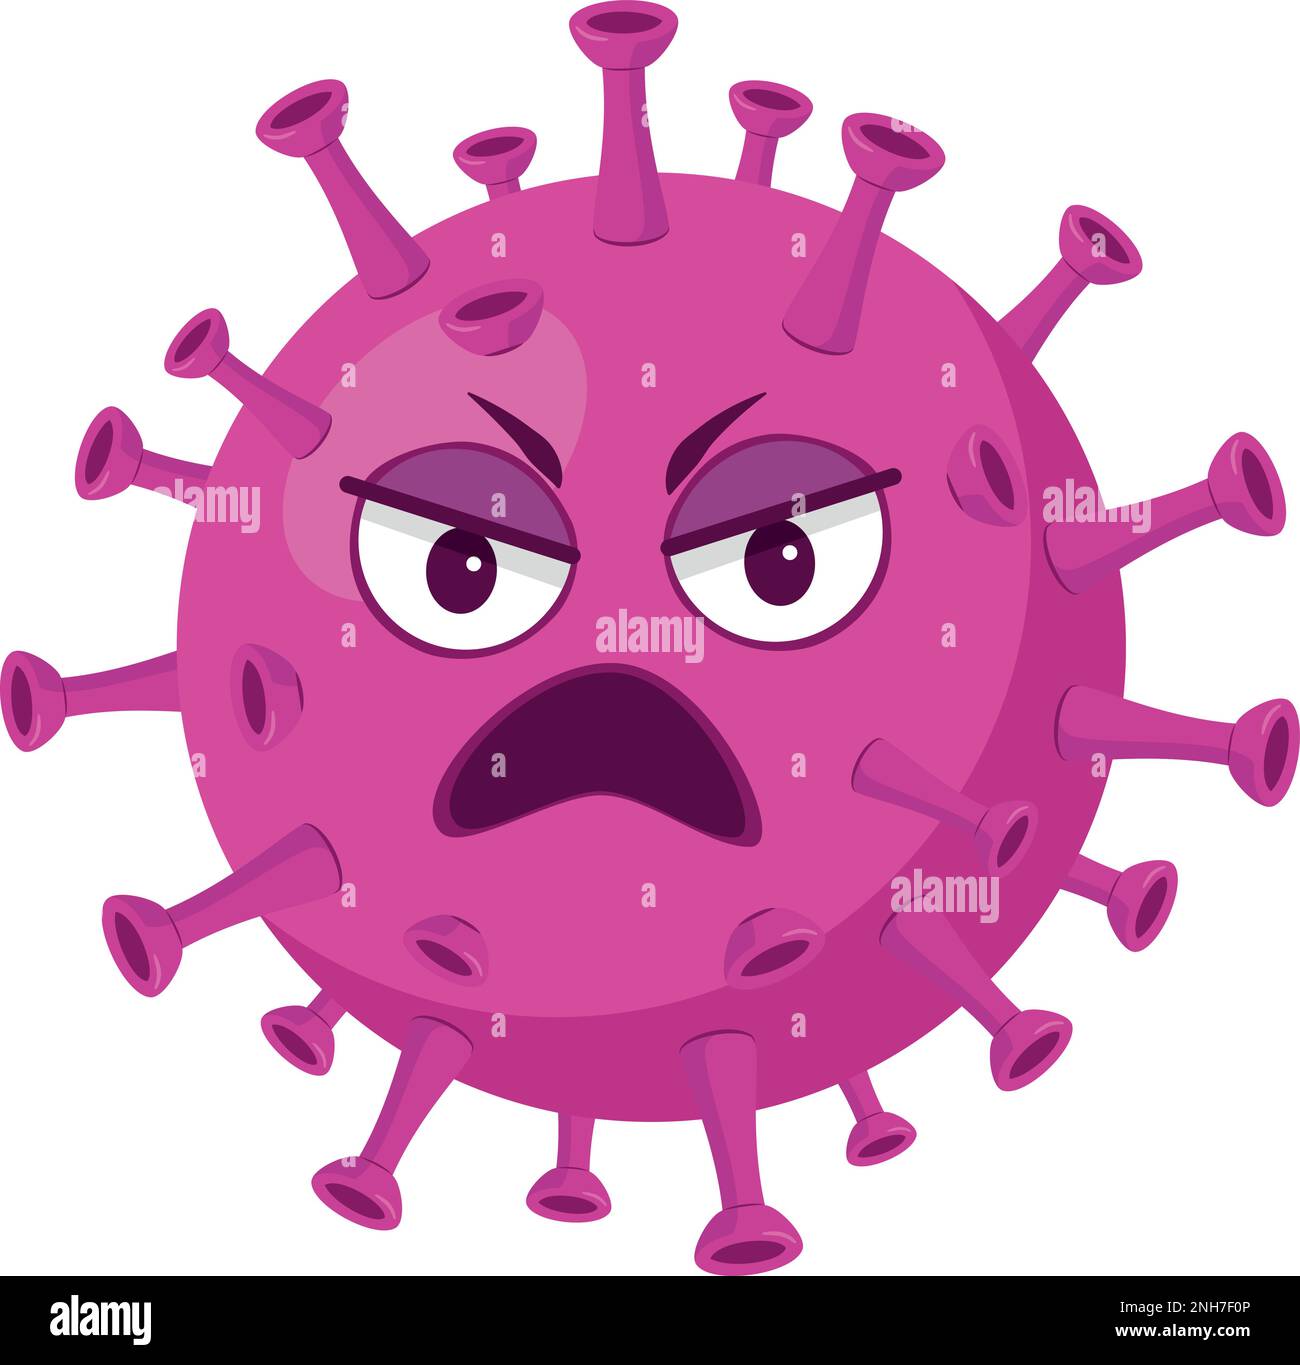 Vector illustration of a Coronavirus virus in cartoon style isolated on white background Stock Vector